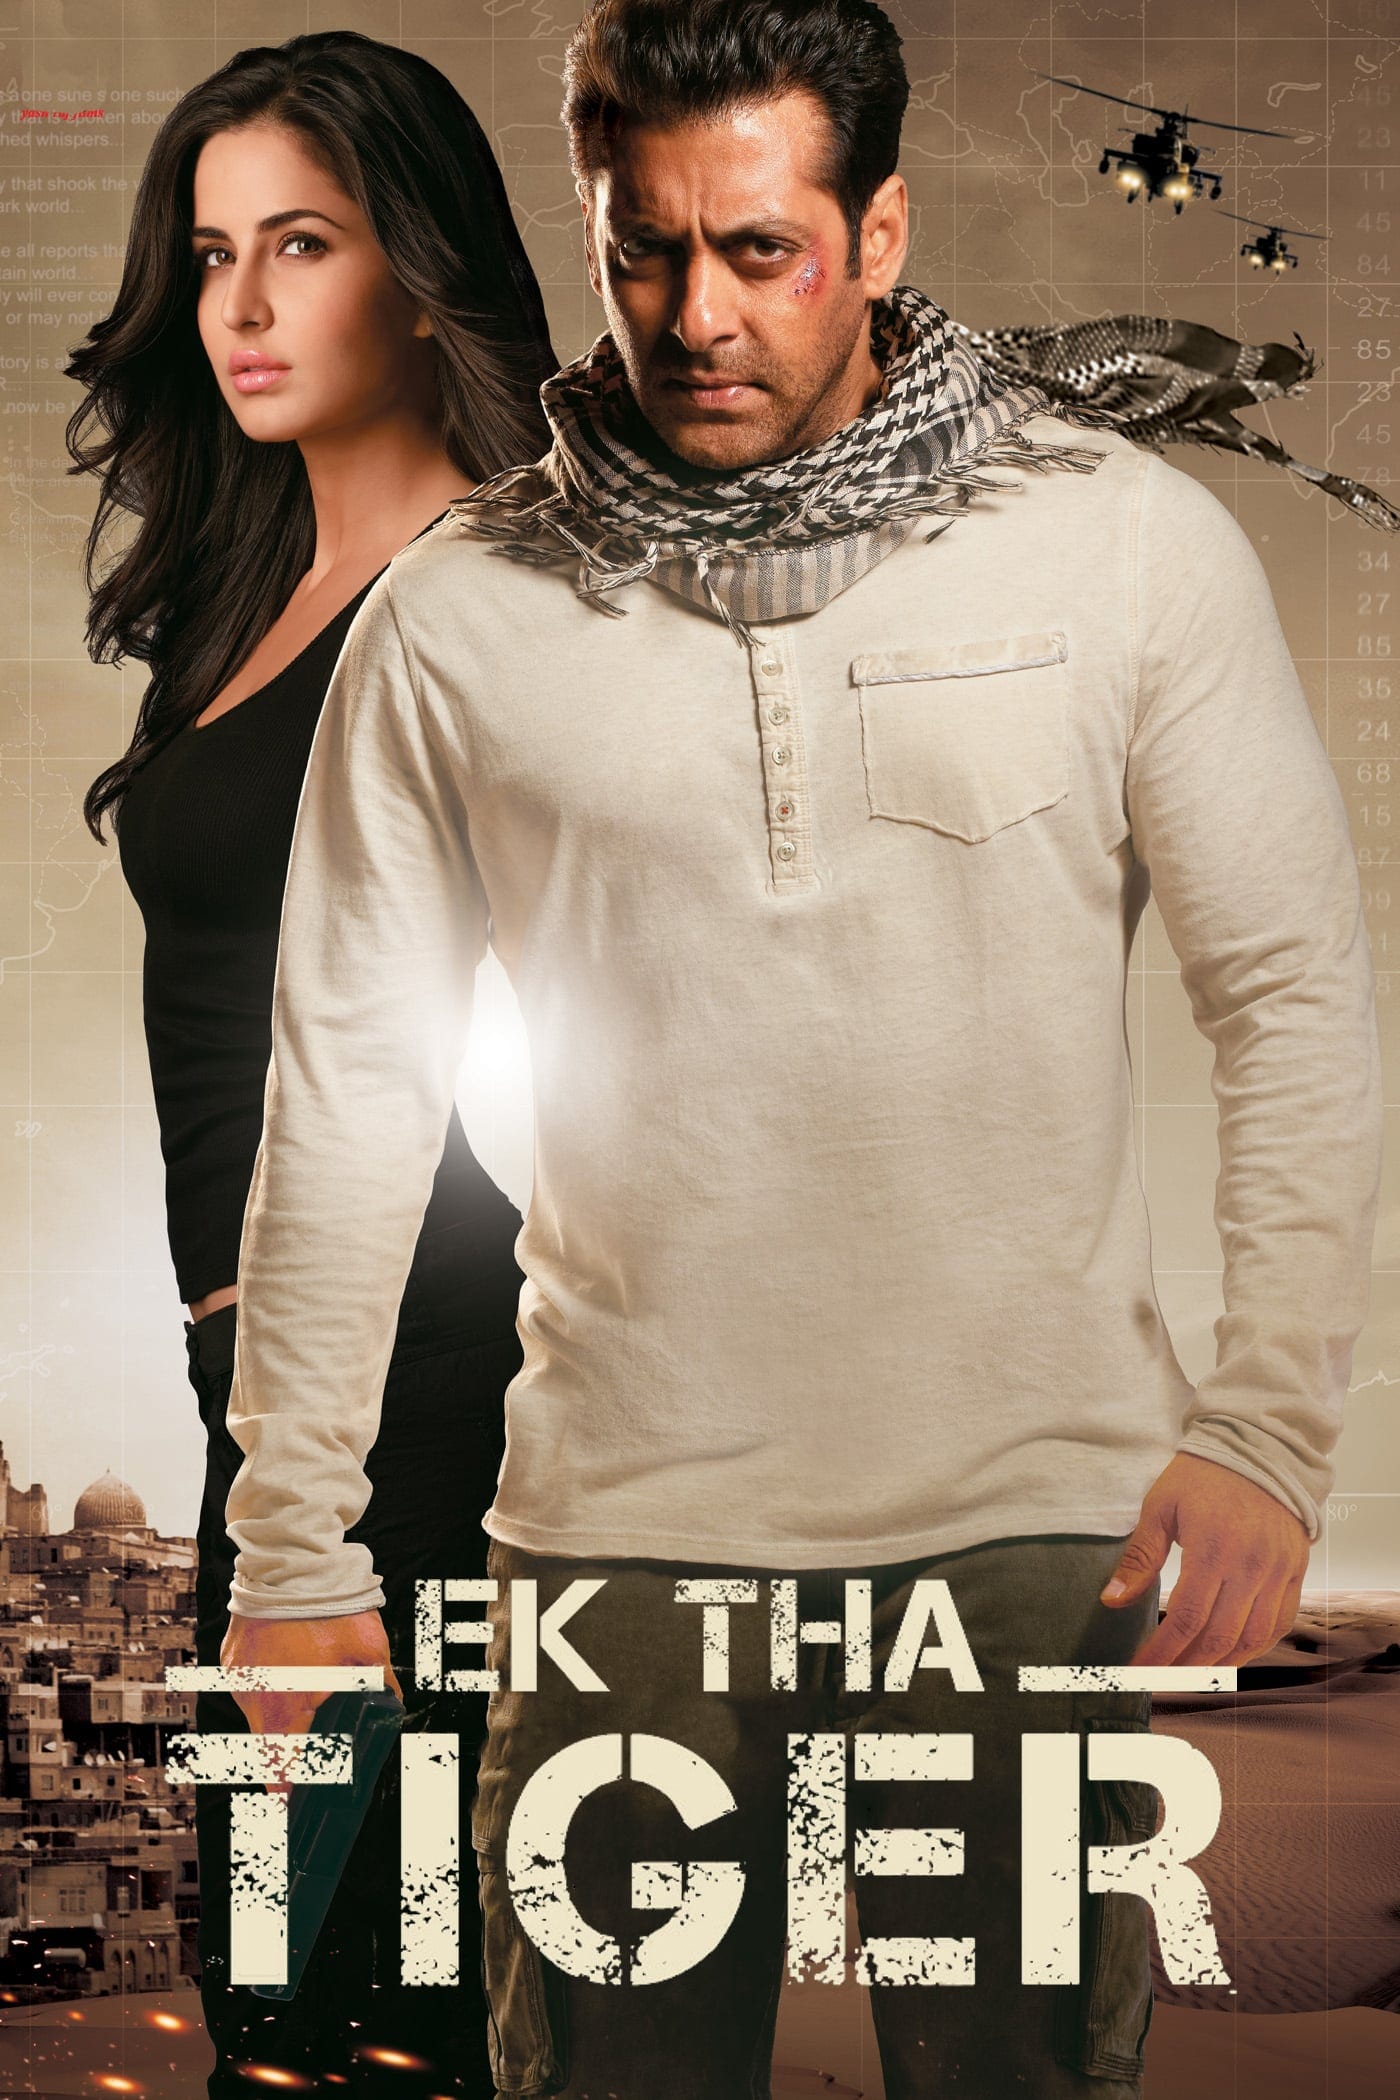 Poster for the movie "Ek Tha Tiger"